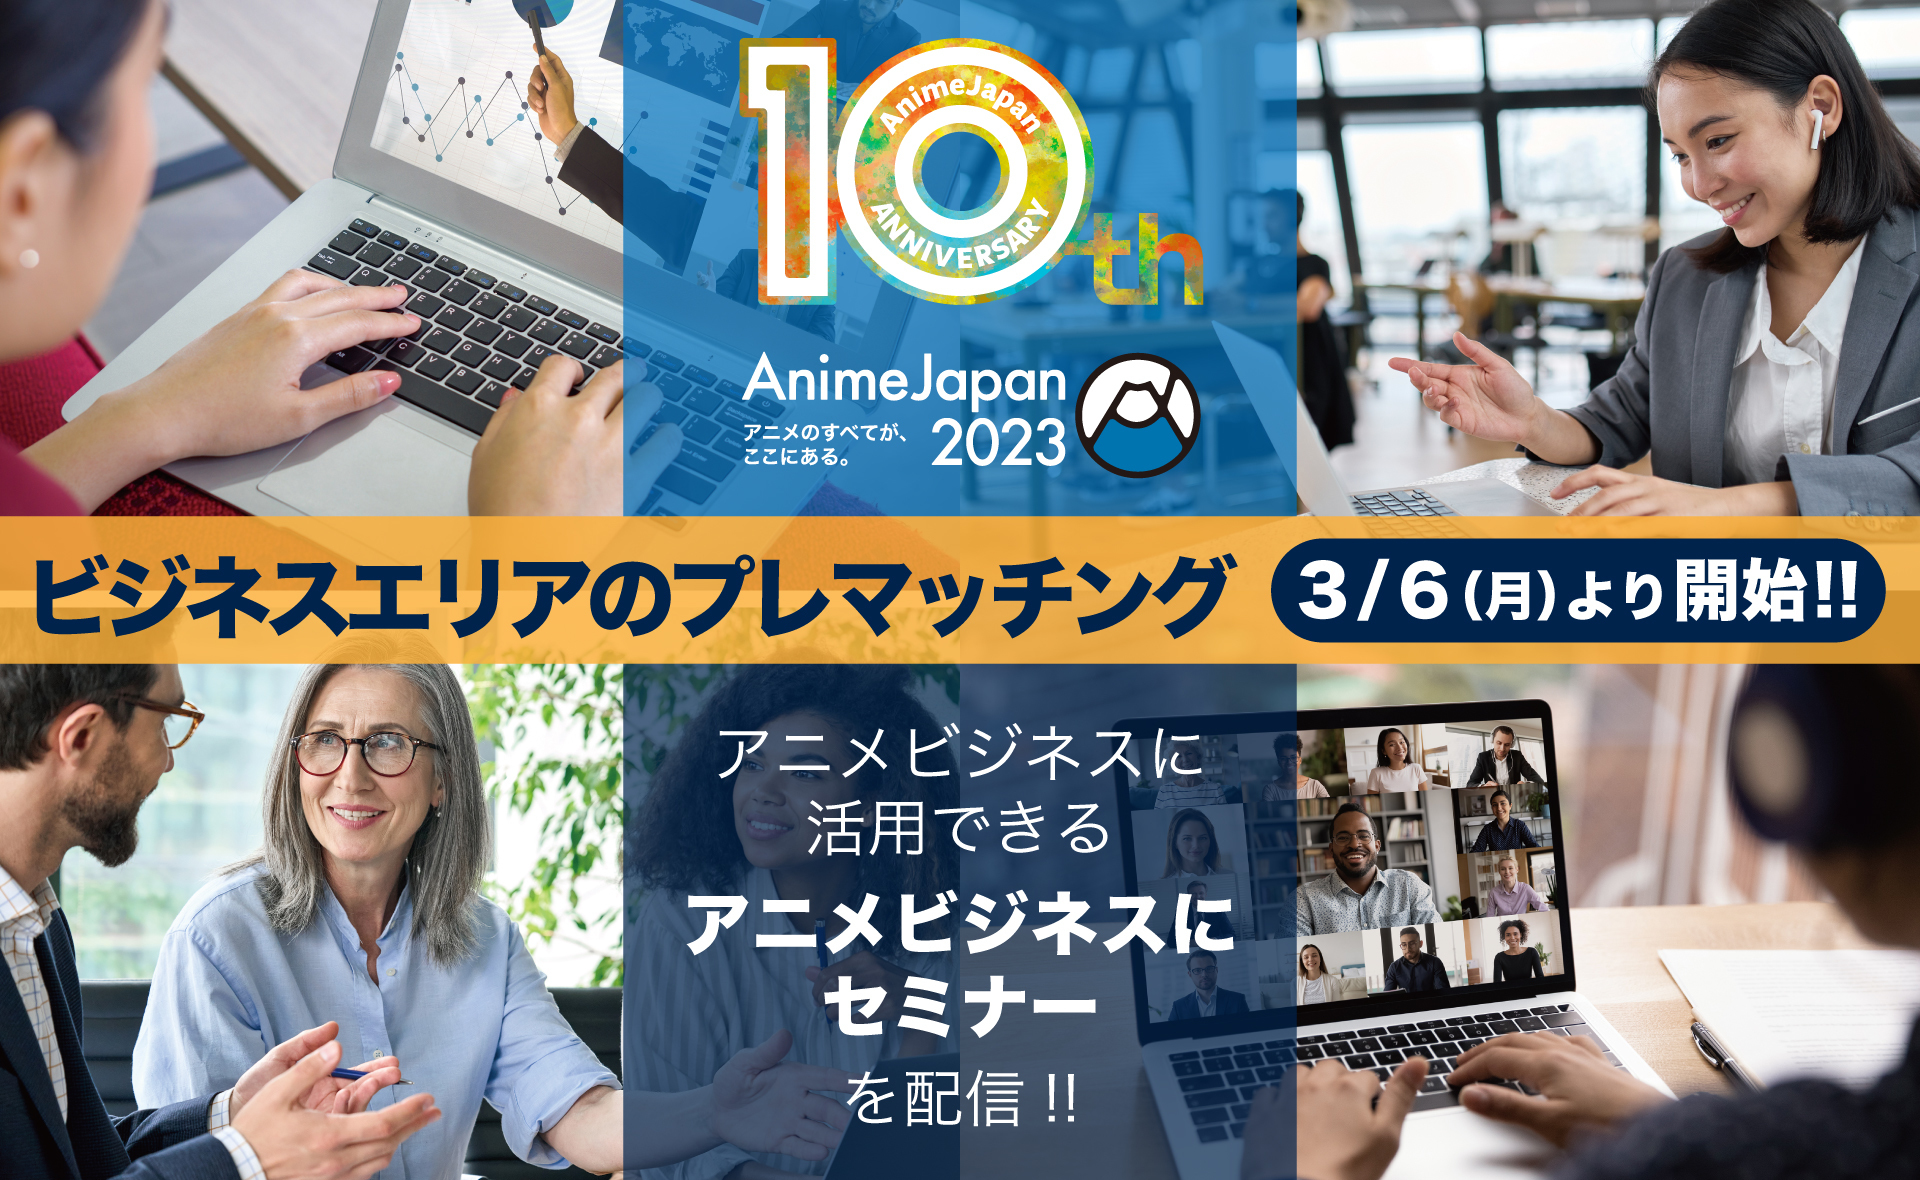 世界最大級アニメイベント「AnimeJapan 2023」
オンライン開催「ビジネスエリア」への登録を本日より開始！
アニメビジネスセミナーの3つのプログラムをオンライン配信！
ビジネスエリア会期：2023年3月27日(月)・28日(火)